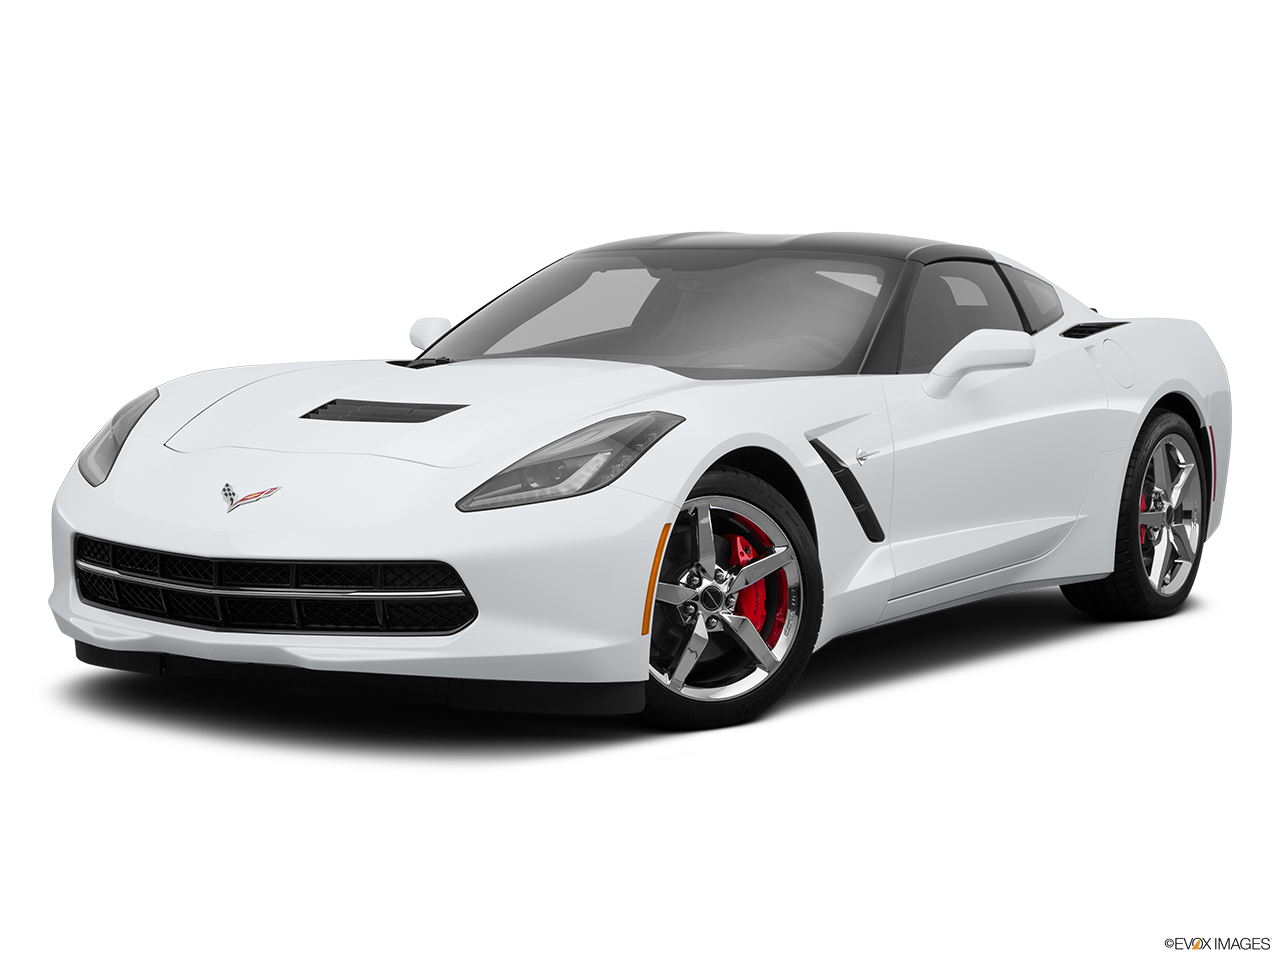 Download Corvette Car Transparent Background HQ PNG Image: Tải ảnh PNG chất lượng cao của xe Corvette Bạn đang tìm kiếm ảnh của chiếc xe Corvette với nền trong suốt để tạo ra một bản thiết kế độc đáo và chuyên nghiệp? Với ảnh PNG chất lượng cao này, bạn có thể tải về và sử dụng ngay lập tức. Điều đó sẽ mang lại cho bạn một trải nghiệm thiết kế tuyệt vời và độc đáo.